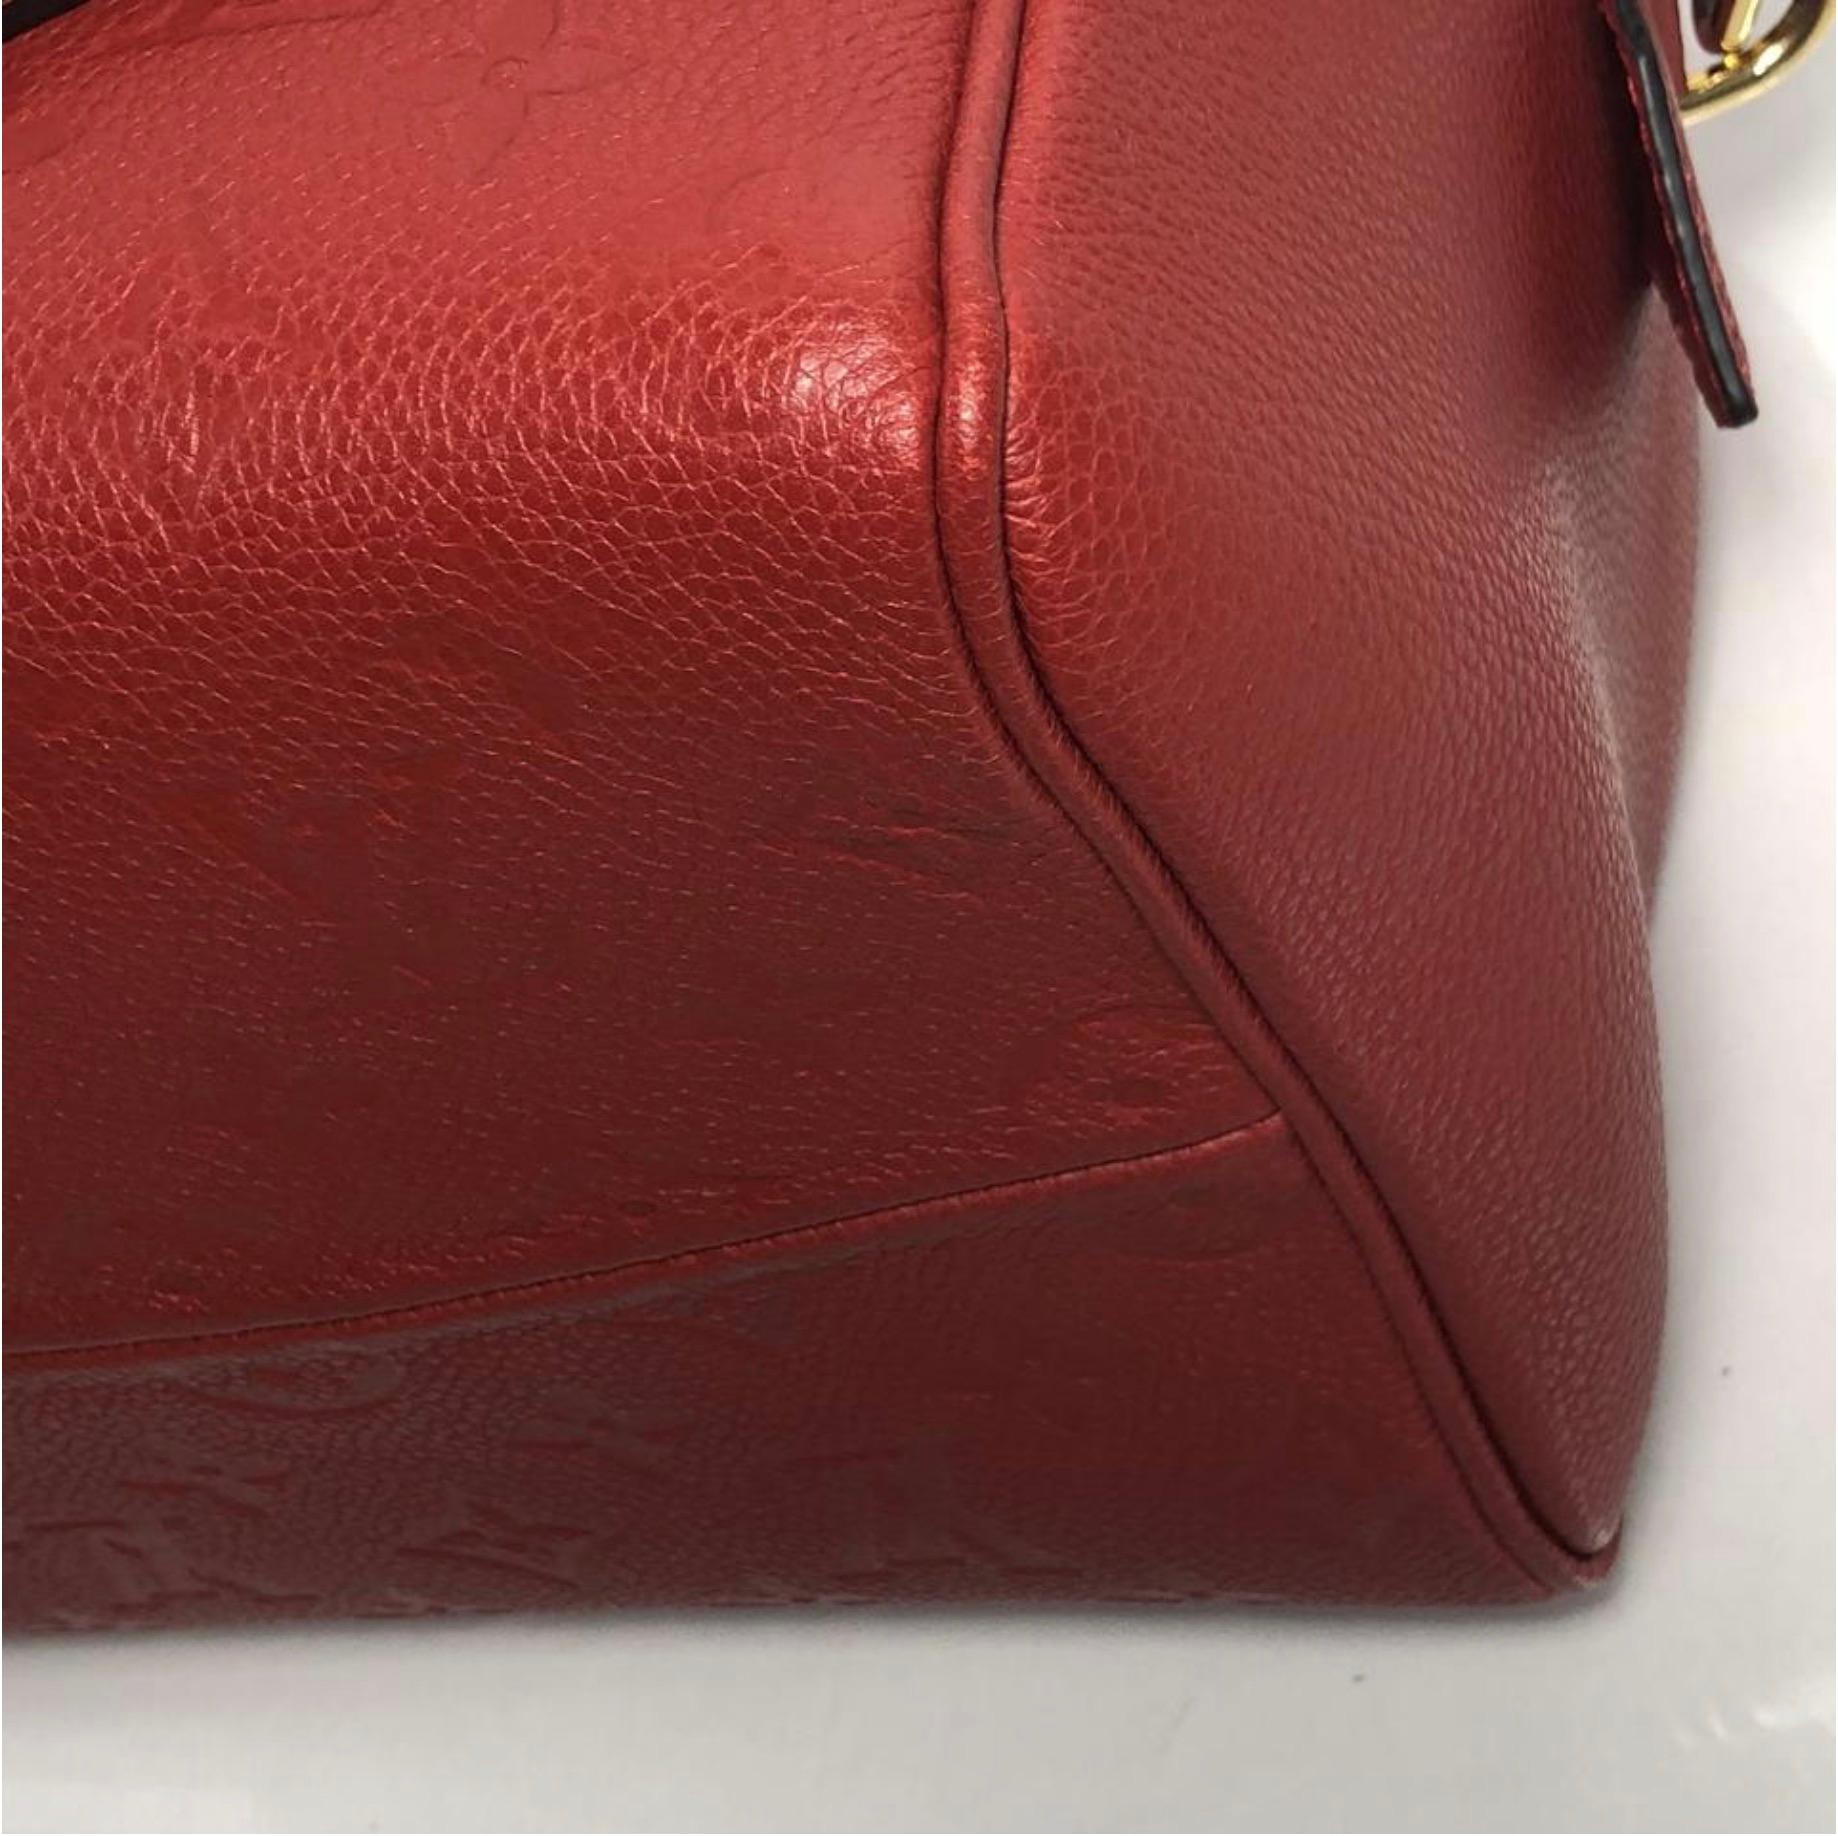 Louis Vuitton Empreinte Speedy 25 in Red Satchel Handbag For Sale 4